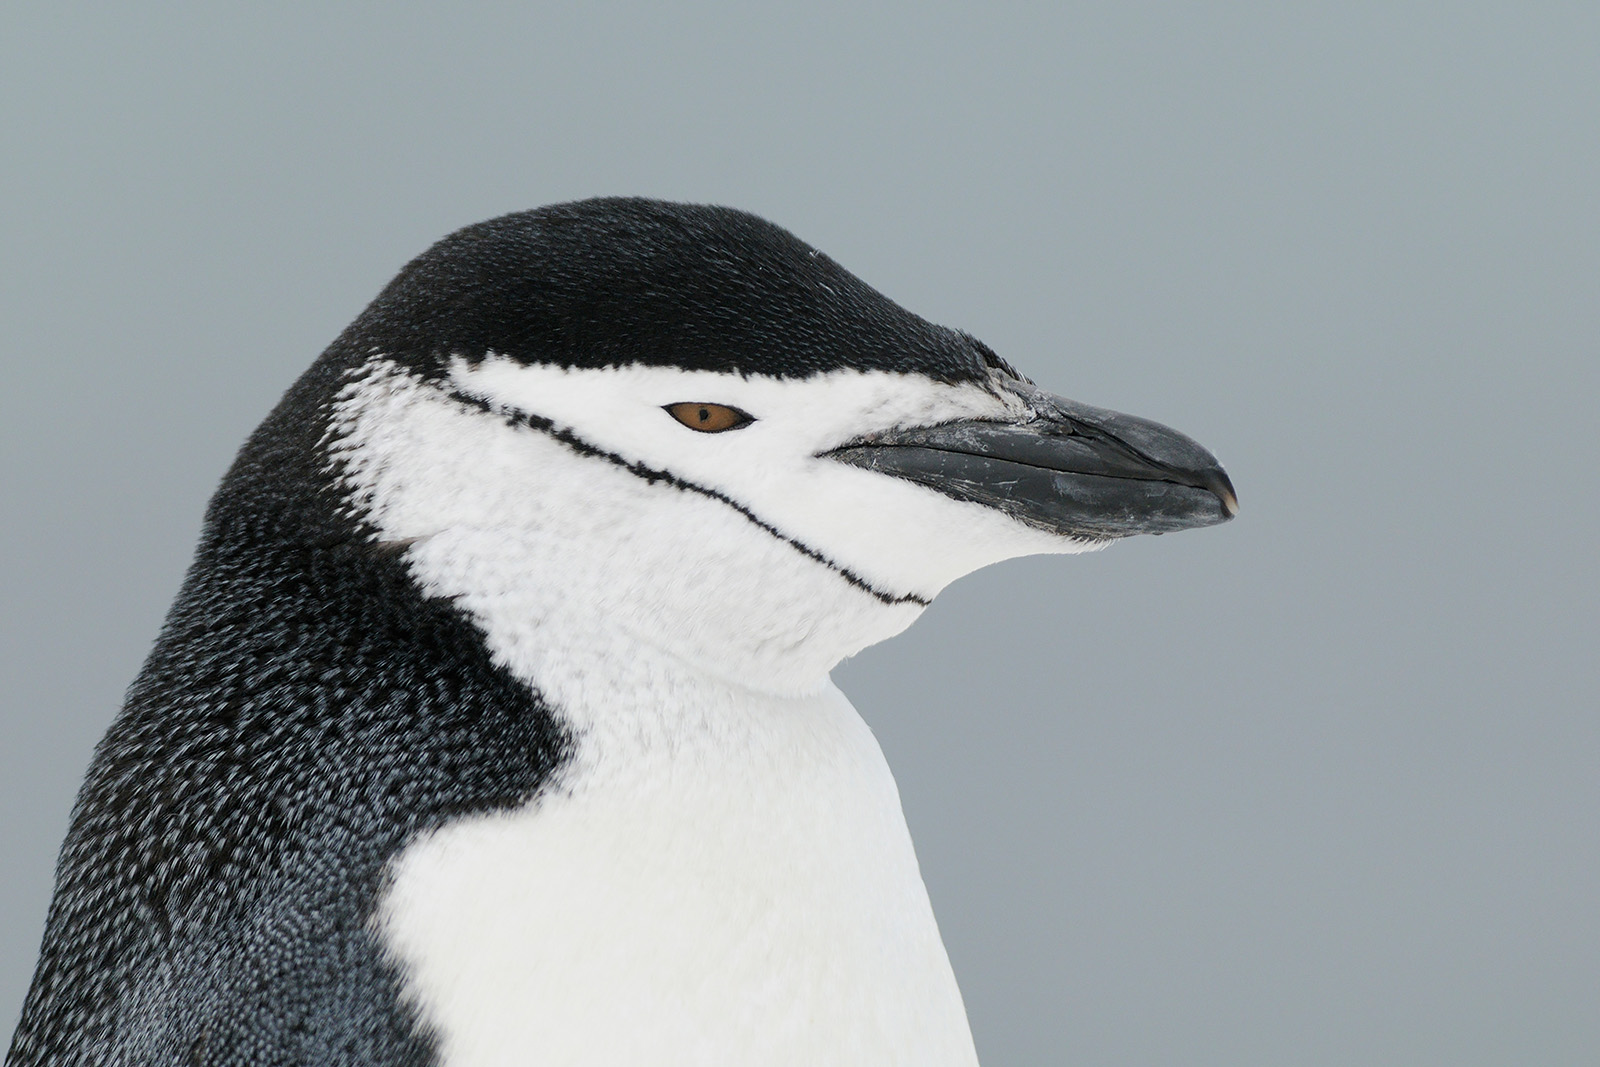 Det stora pingvinäventyret Falkland, Sydgeorgien och Antarktis. Fotoresa med Wild Nature fotoresor. Foto: Magnus Martinsson